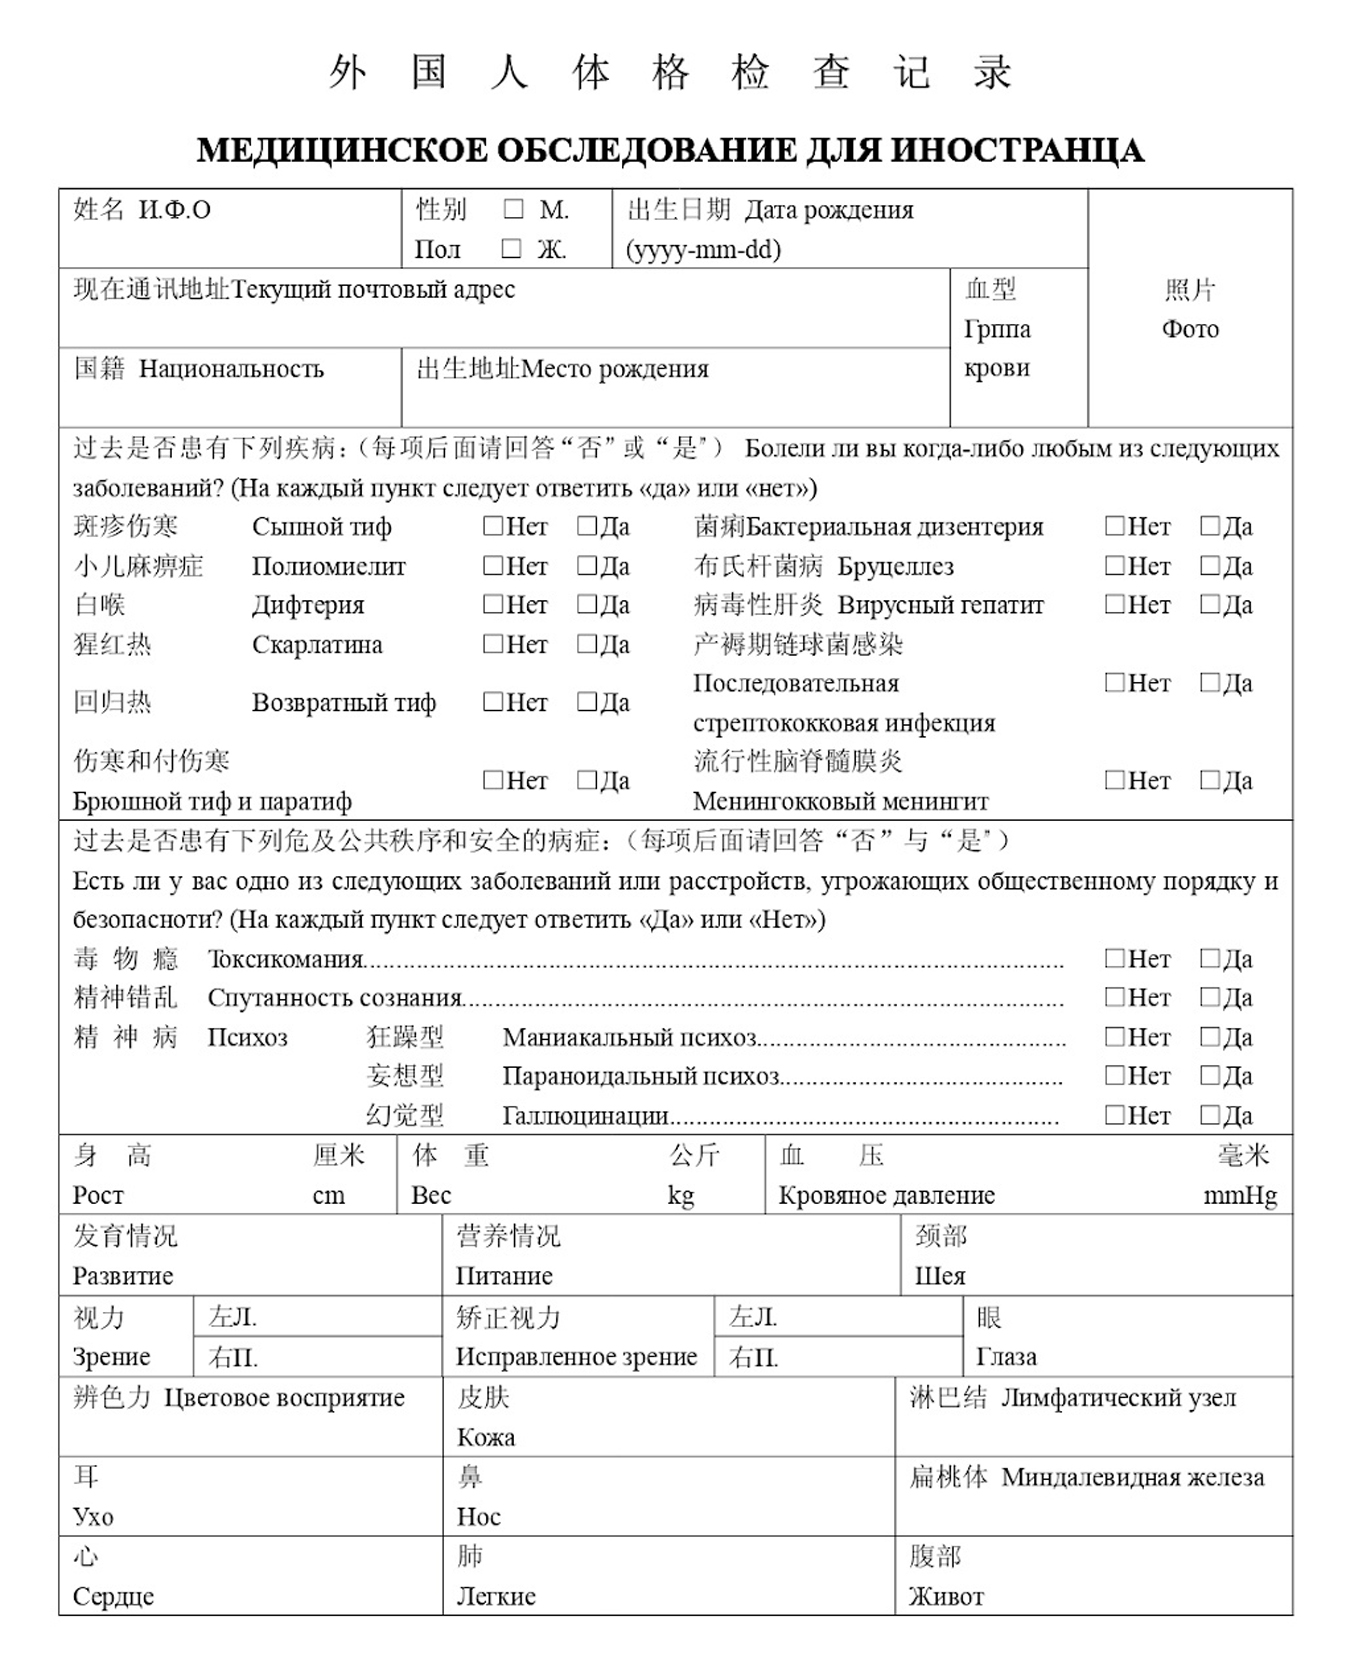 Так выглядит русско-китайская медицинская справка Foreigner Physical Examination Form